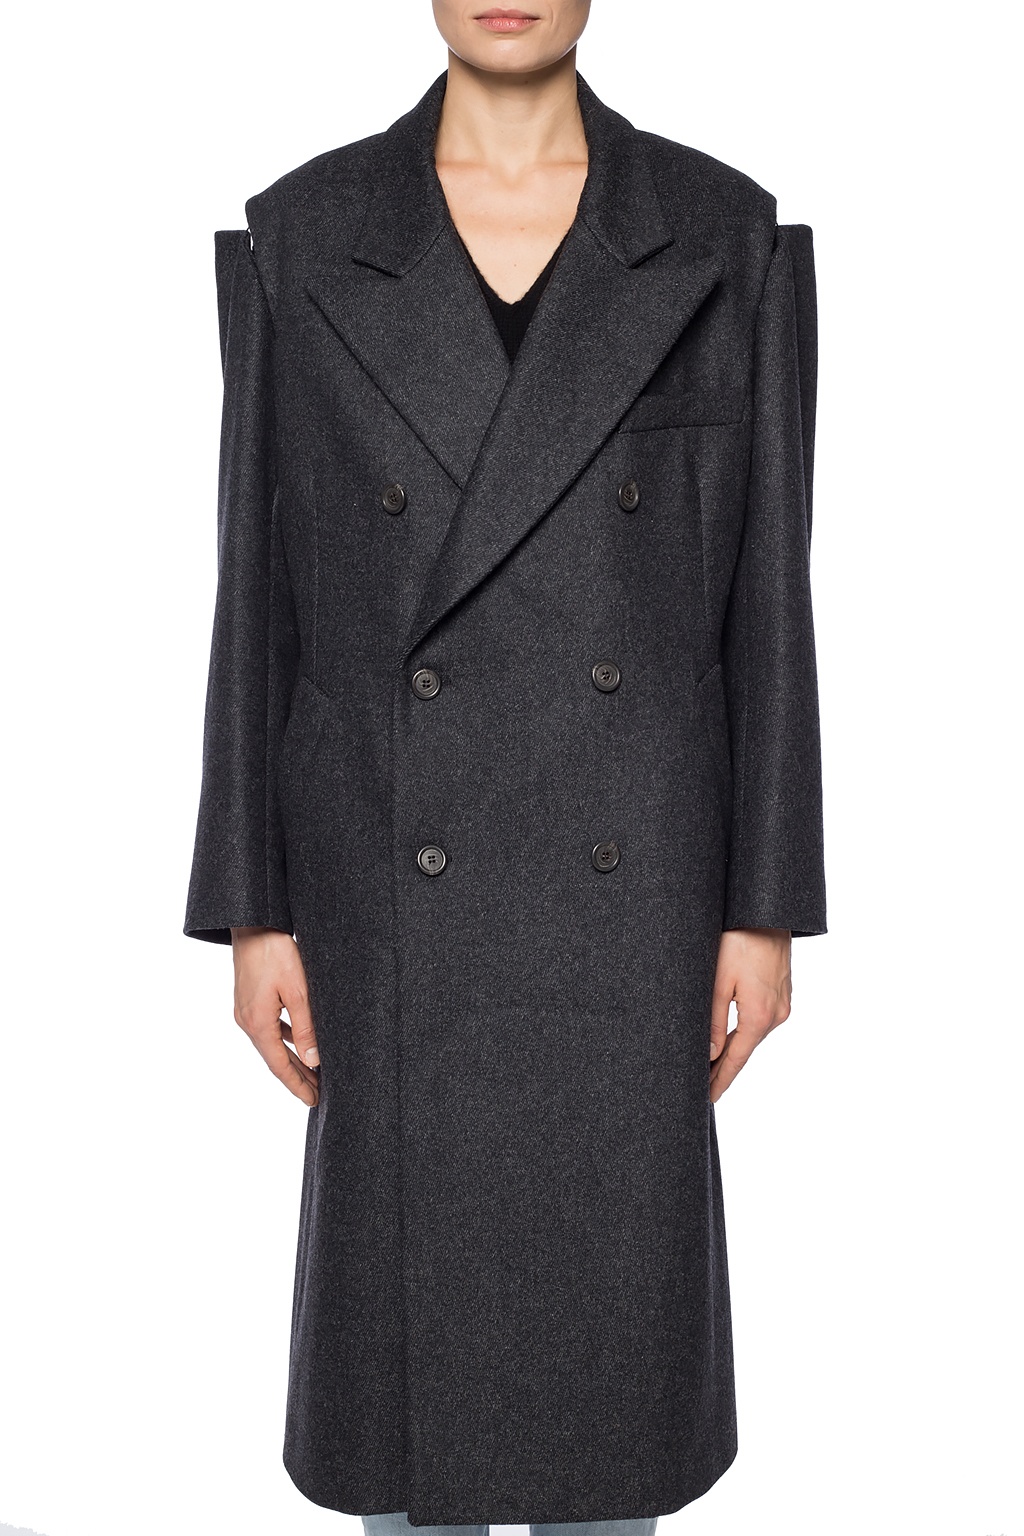 Maison Margiela Double-breasted trench coat | Women's Clothing | Vitkac